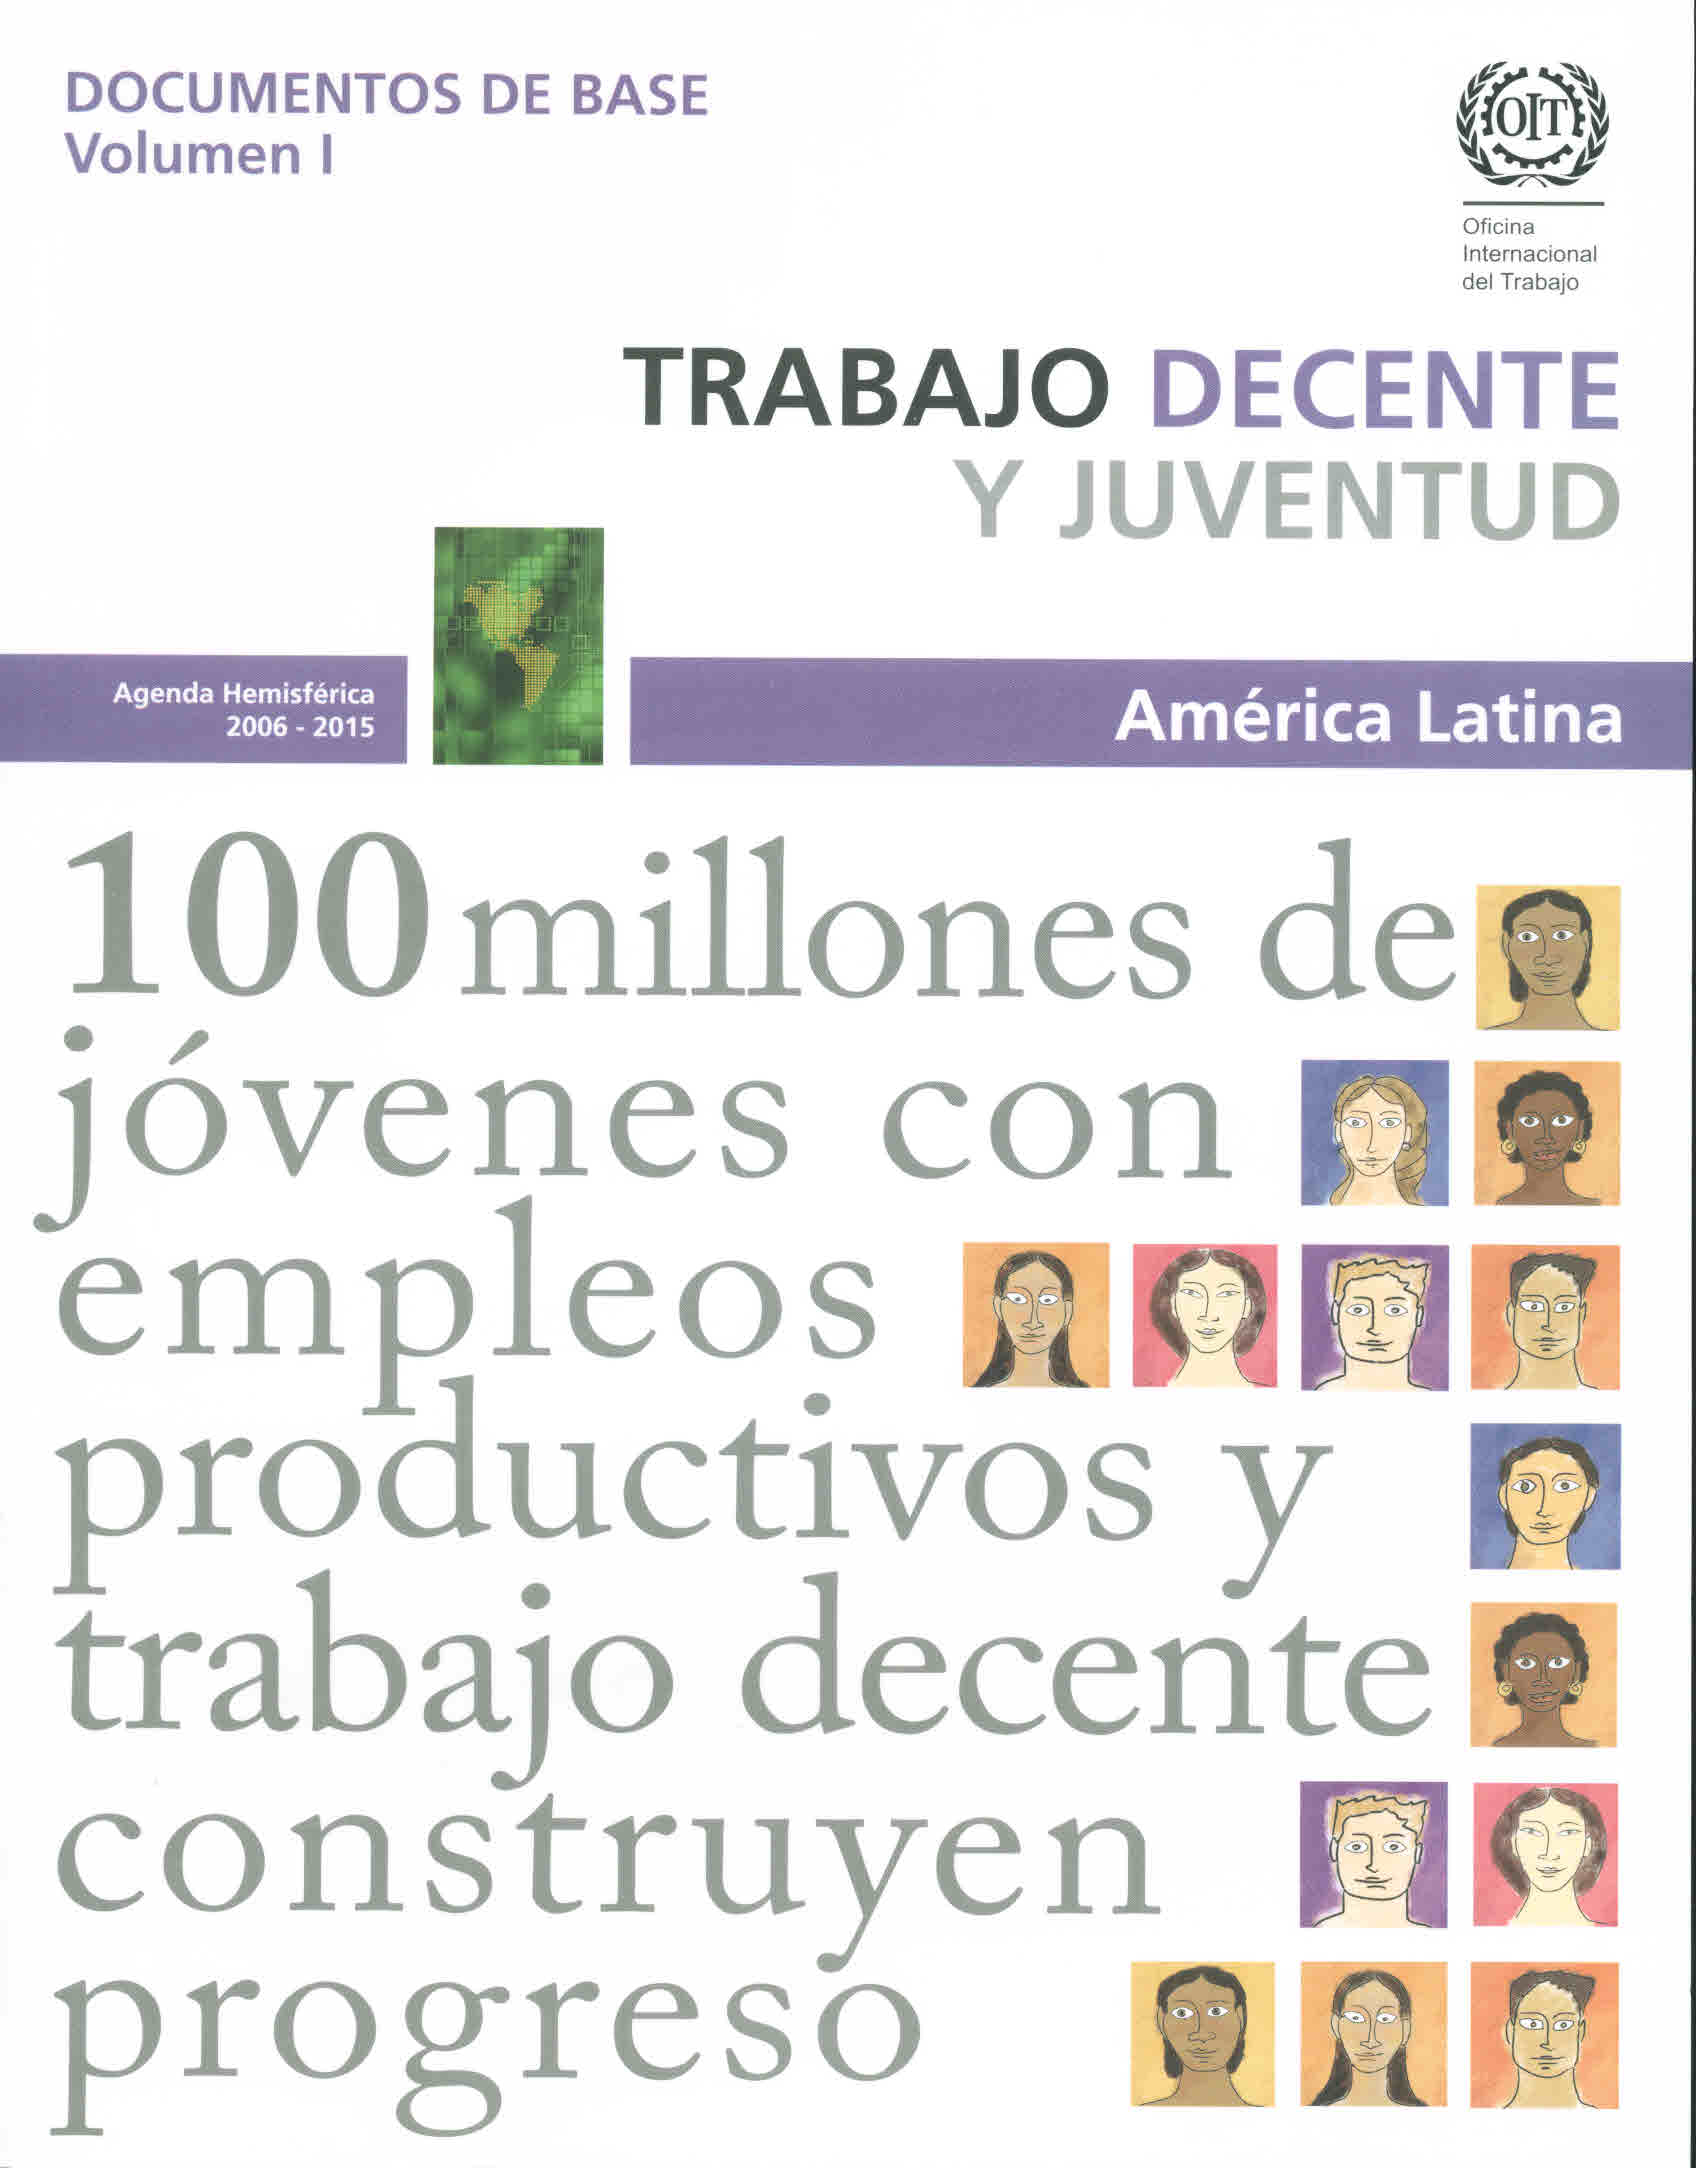 Trabajo decente y juventud. América Latina. Documentos de base